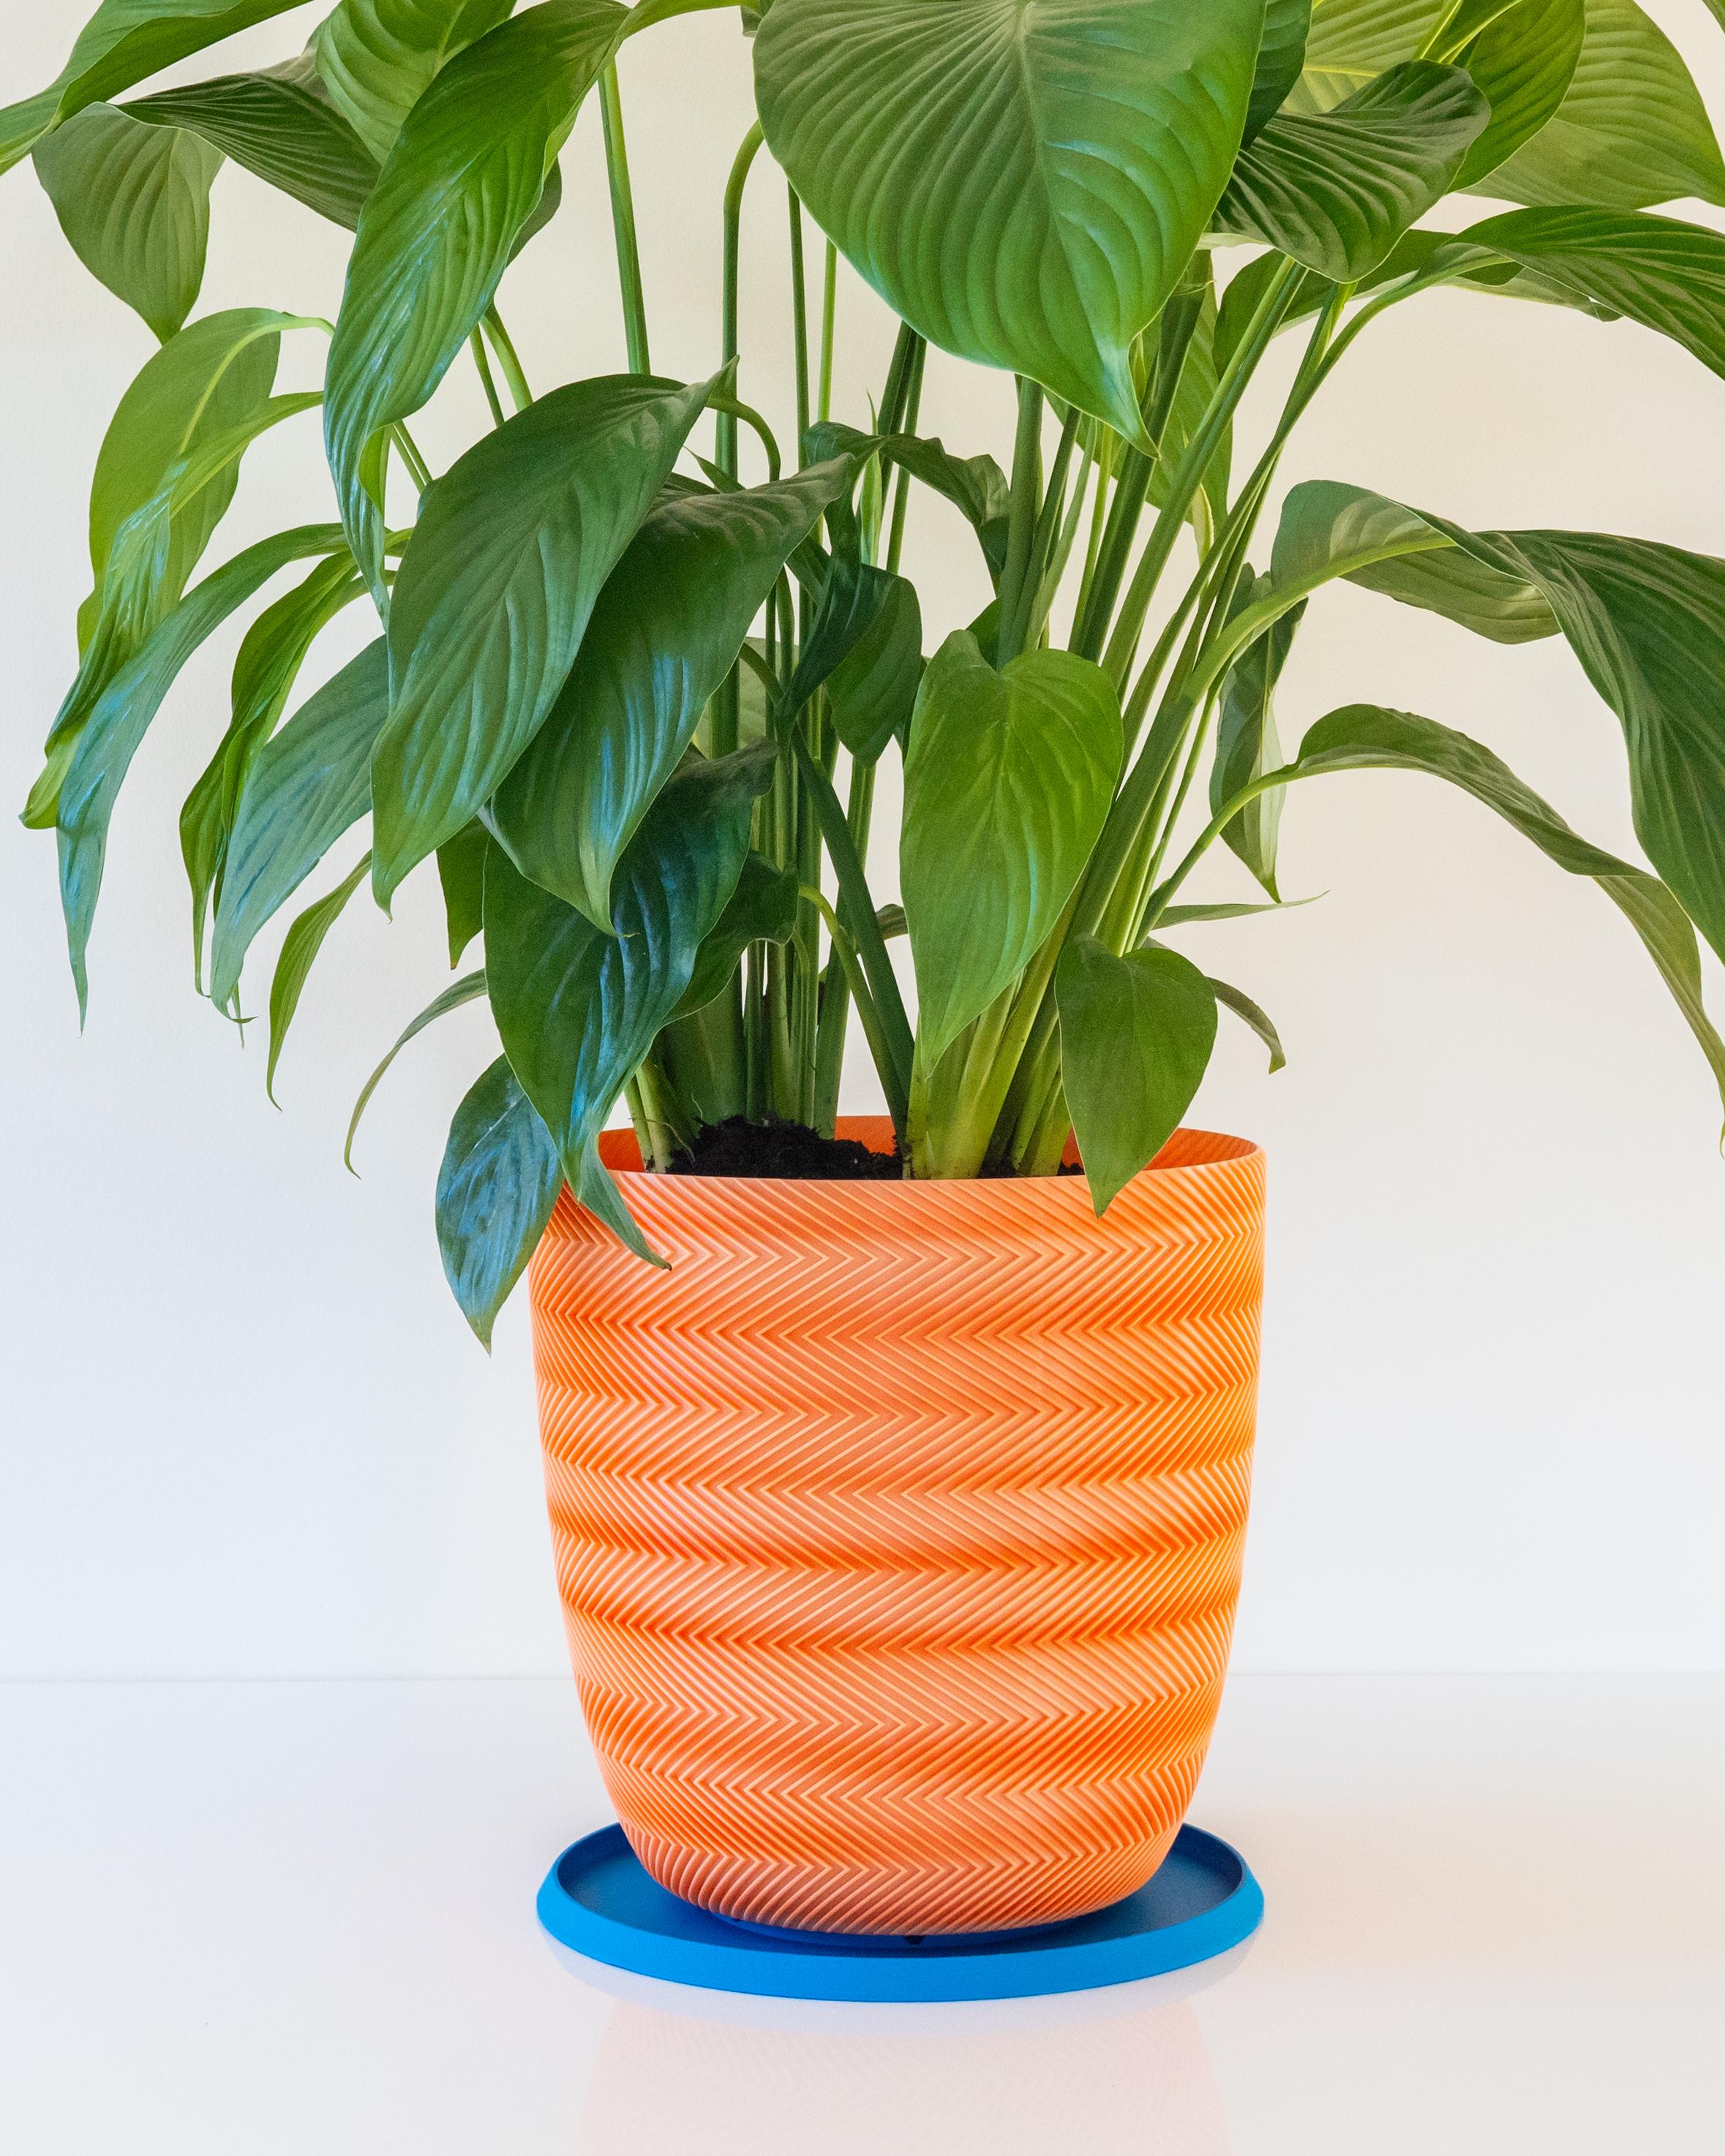 VESUVIUS Pot 001 // Large Vase Mode Planter 3d model